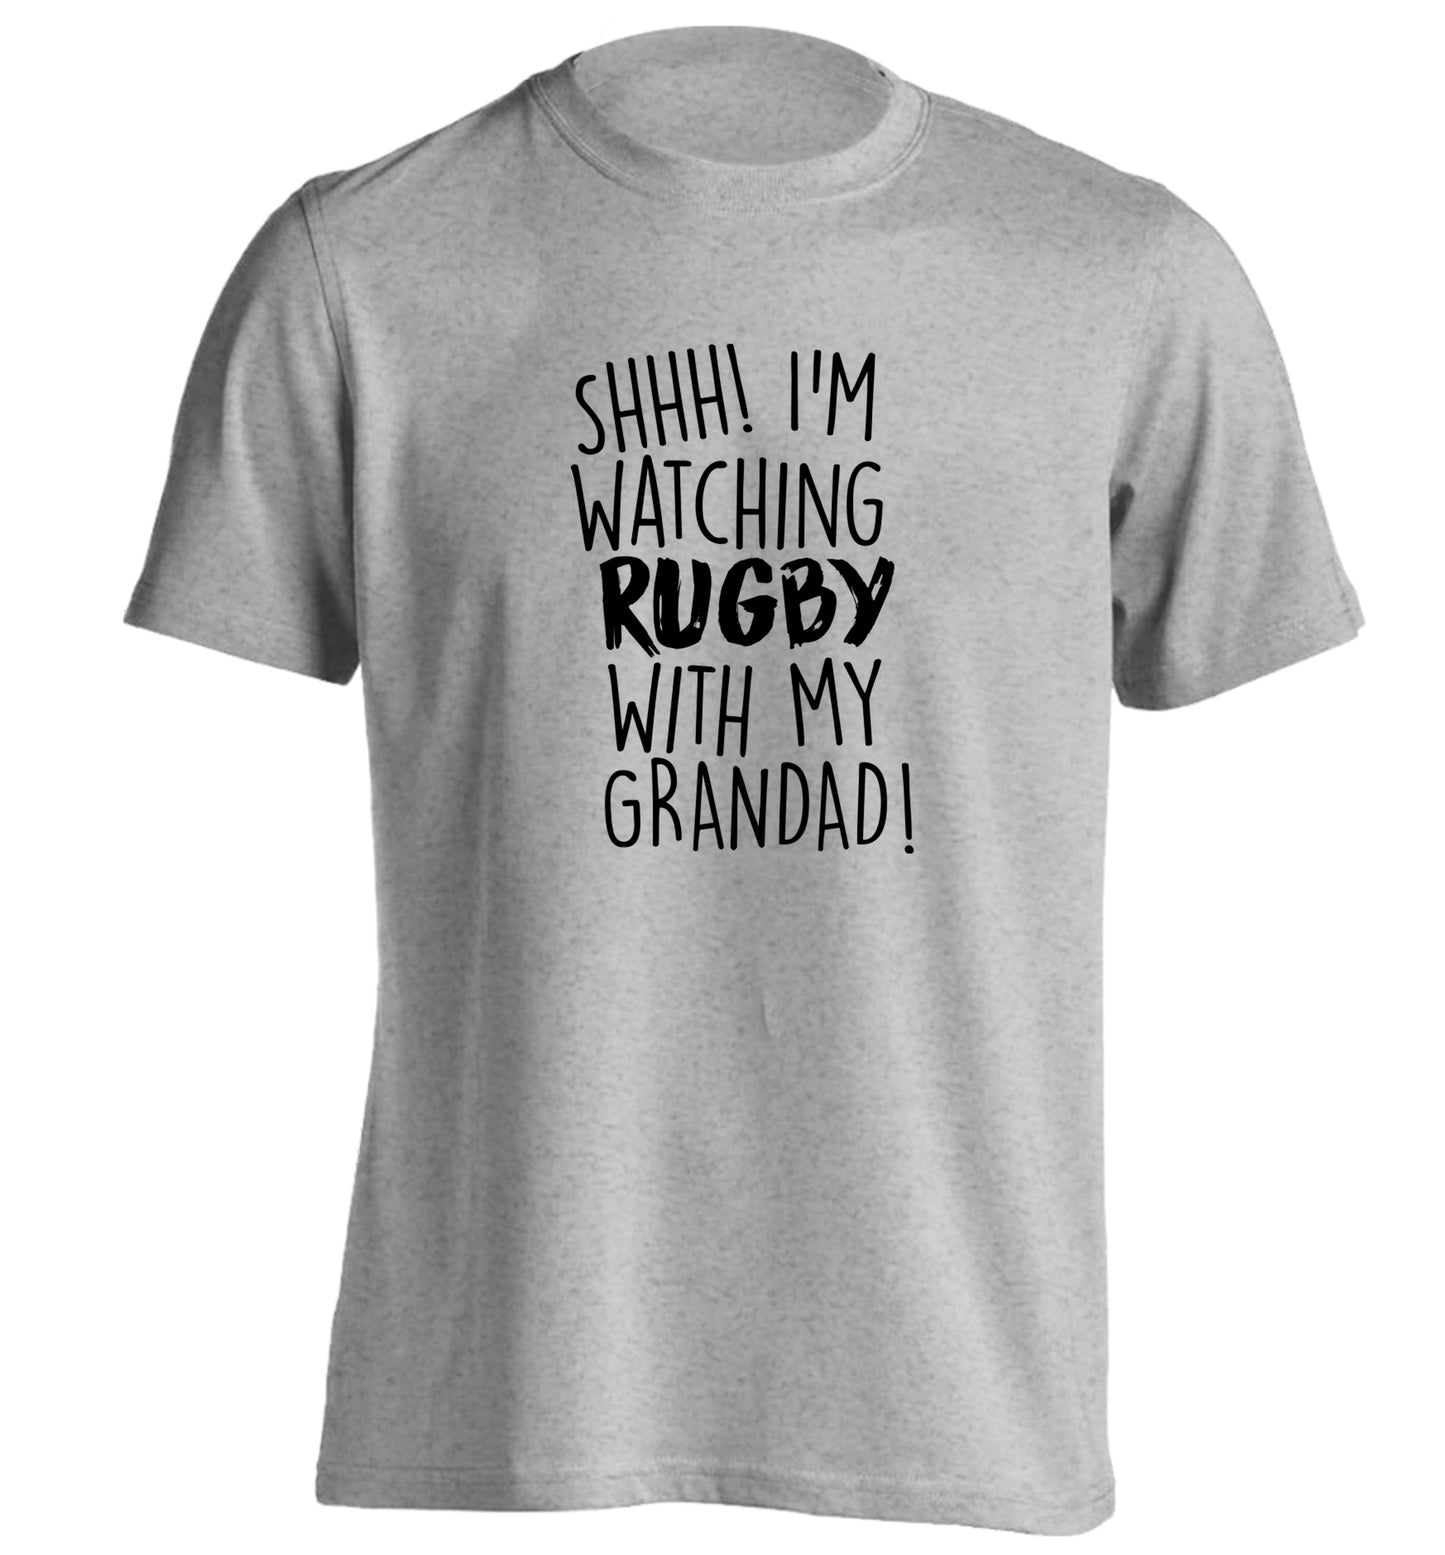 Shh I'm watching rugby with my grandad adults unisex grey Tshirt 2XL